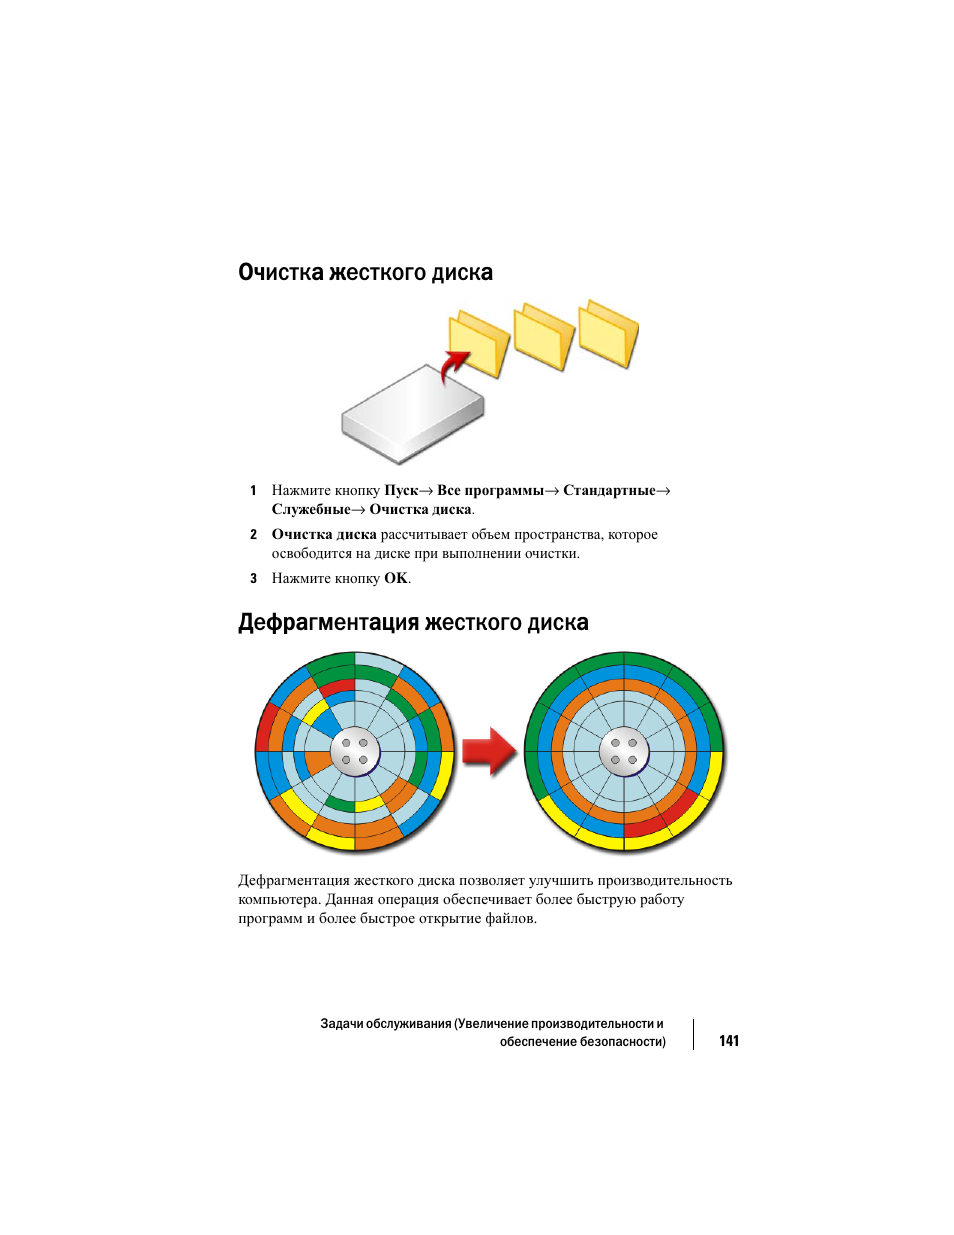 Очистка жесткого диска, Дефрагментация жесткого диска | Инструкция по эксплуатации Dell Inspiron 560 | Страница 141 / 384